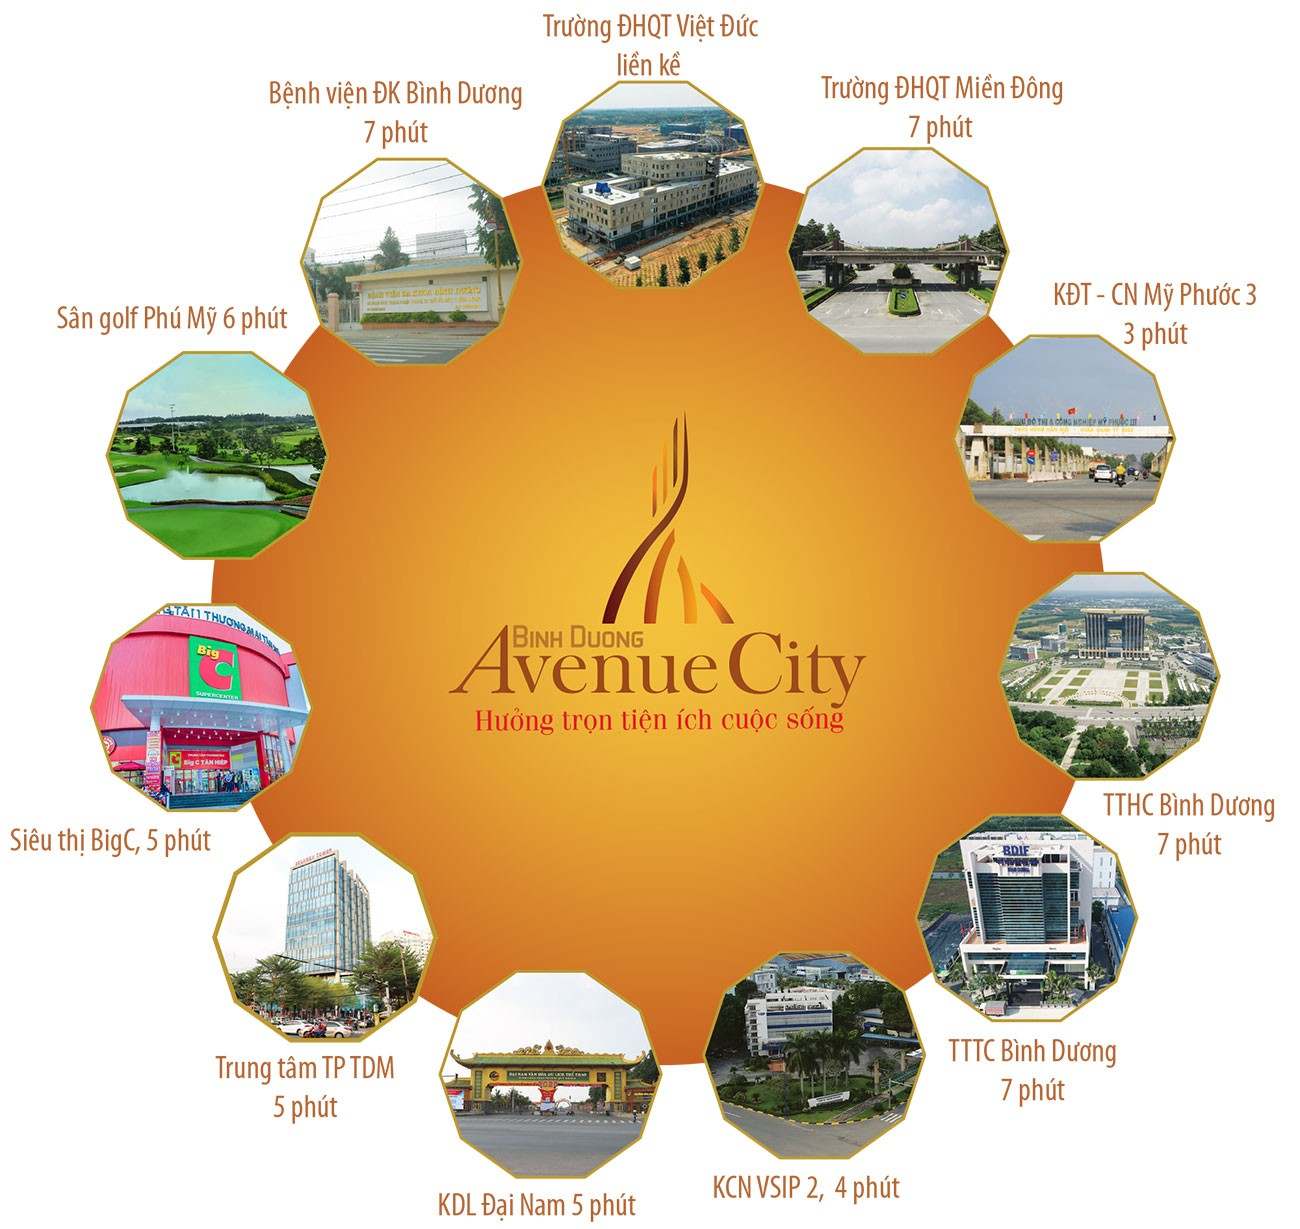 Tiện ích dự án đất nền nhà phố Bình Dương Avenue City Bến Cát Đường Quốc lộ 13 chủ đầu tư Phú Cường